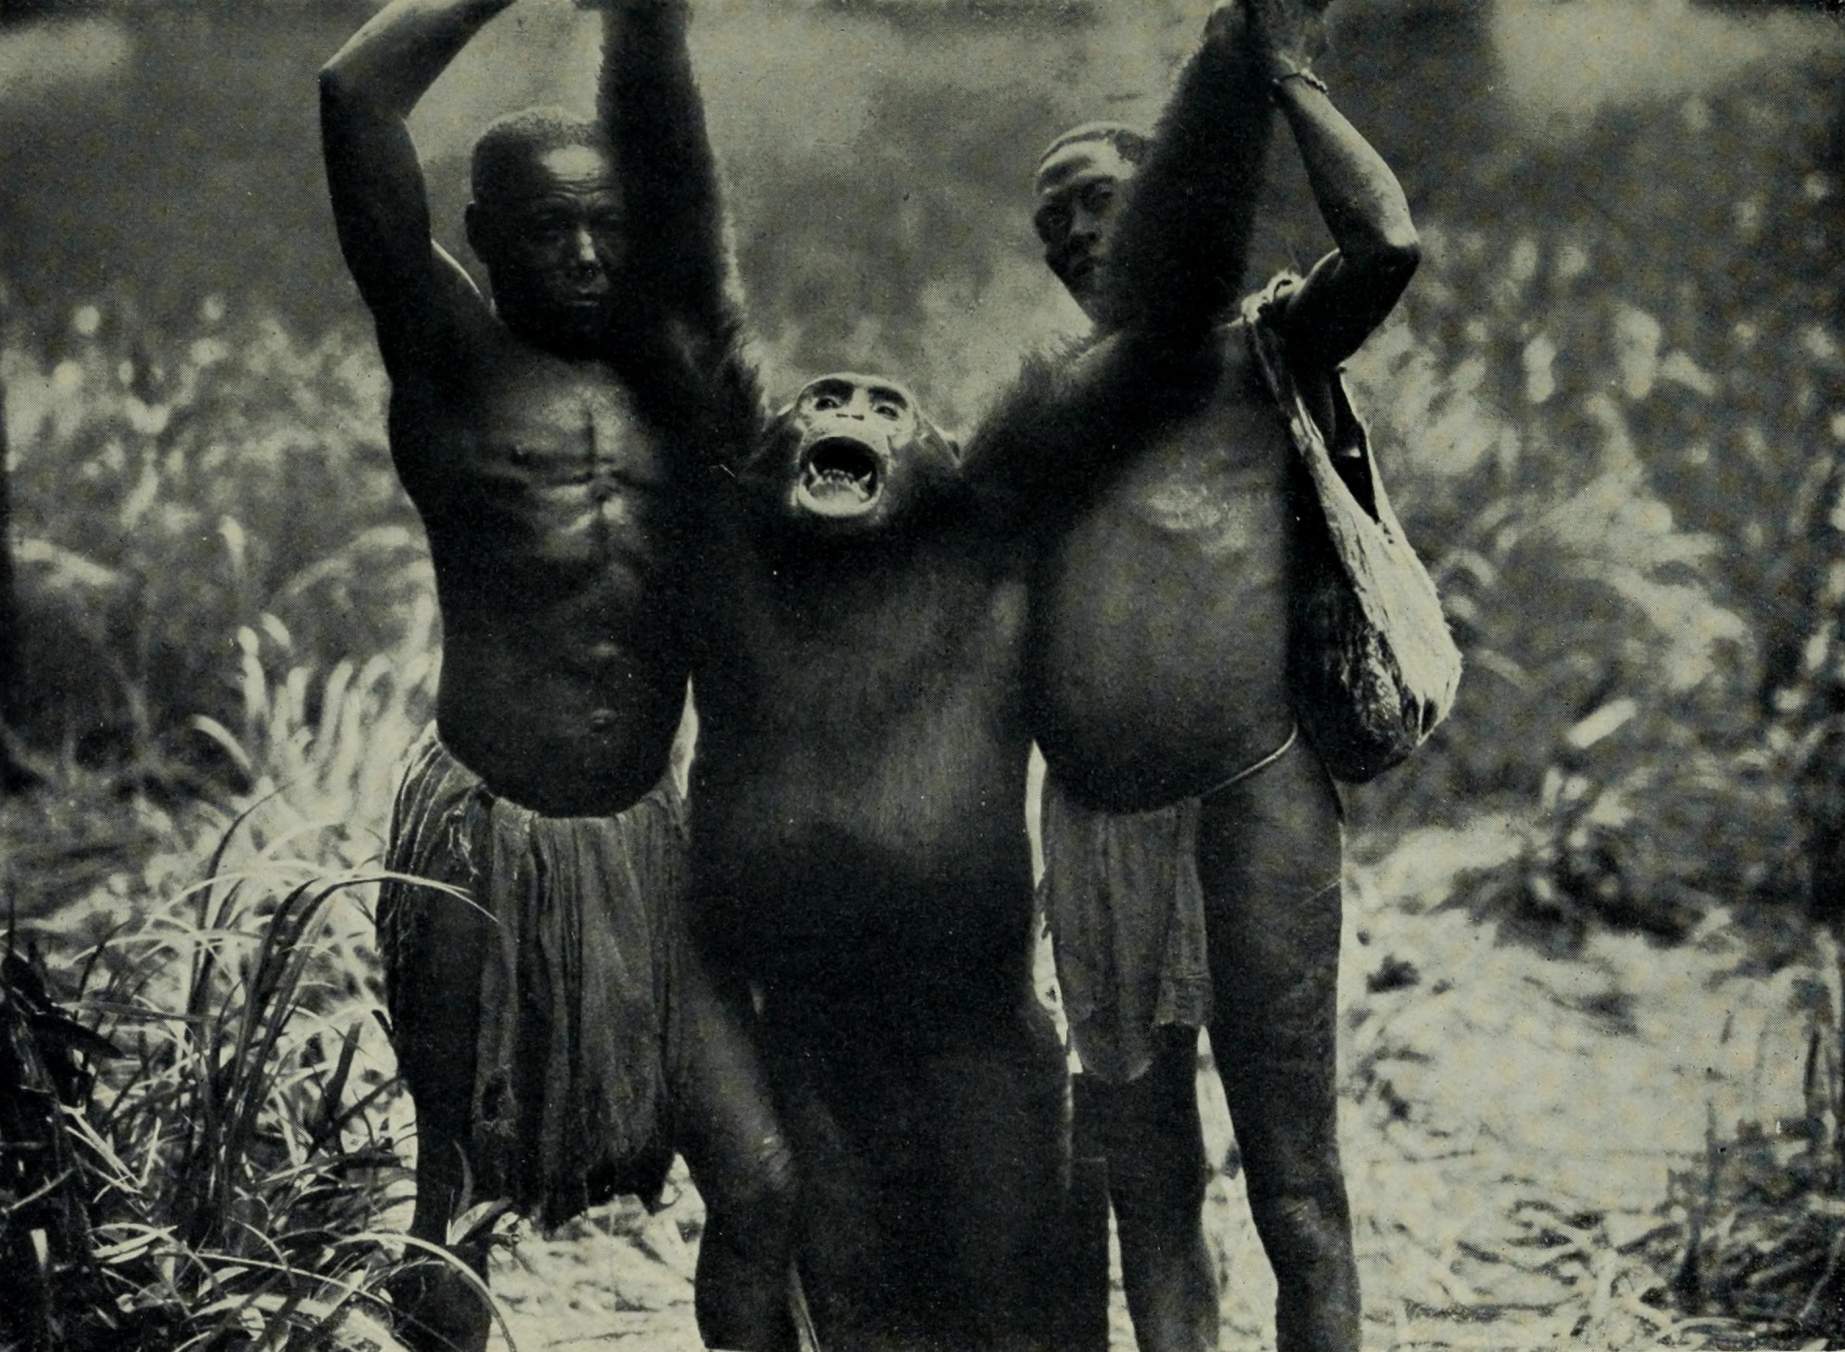 Um chimpanzé gigante, morto pelo explorador alemão ainvon Wiese no Congo durante sua expedição (1910-1911). Wikimedia Commons